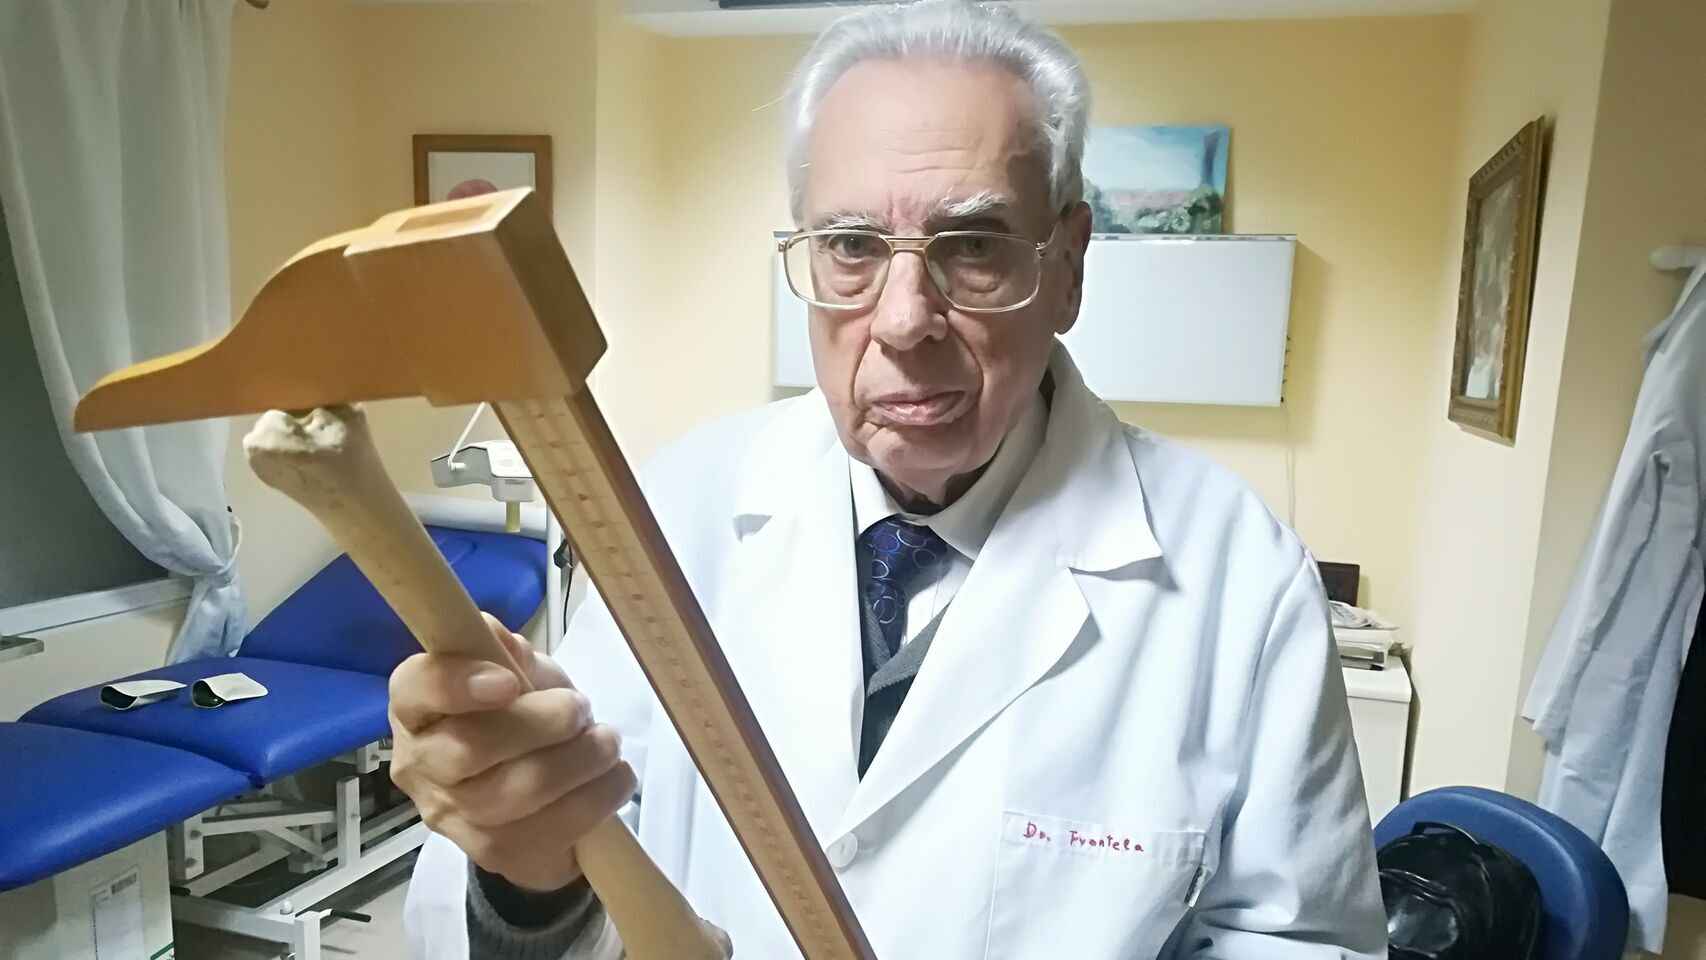 El catedrático de Medicina Legal Luis Frontela (Melilla, 1941) en su despacho de Sevilla, en febrero de 2019.